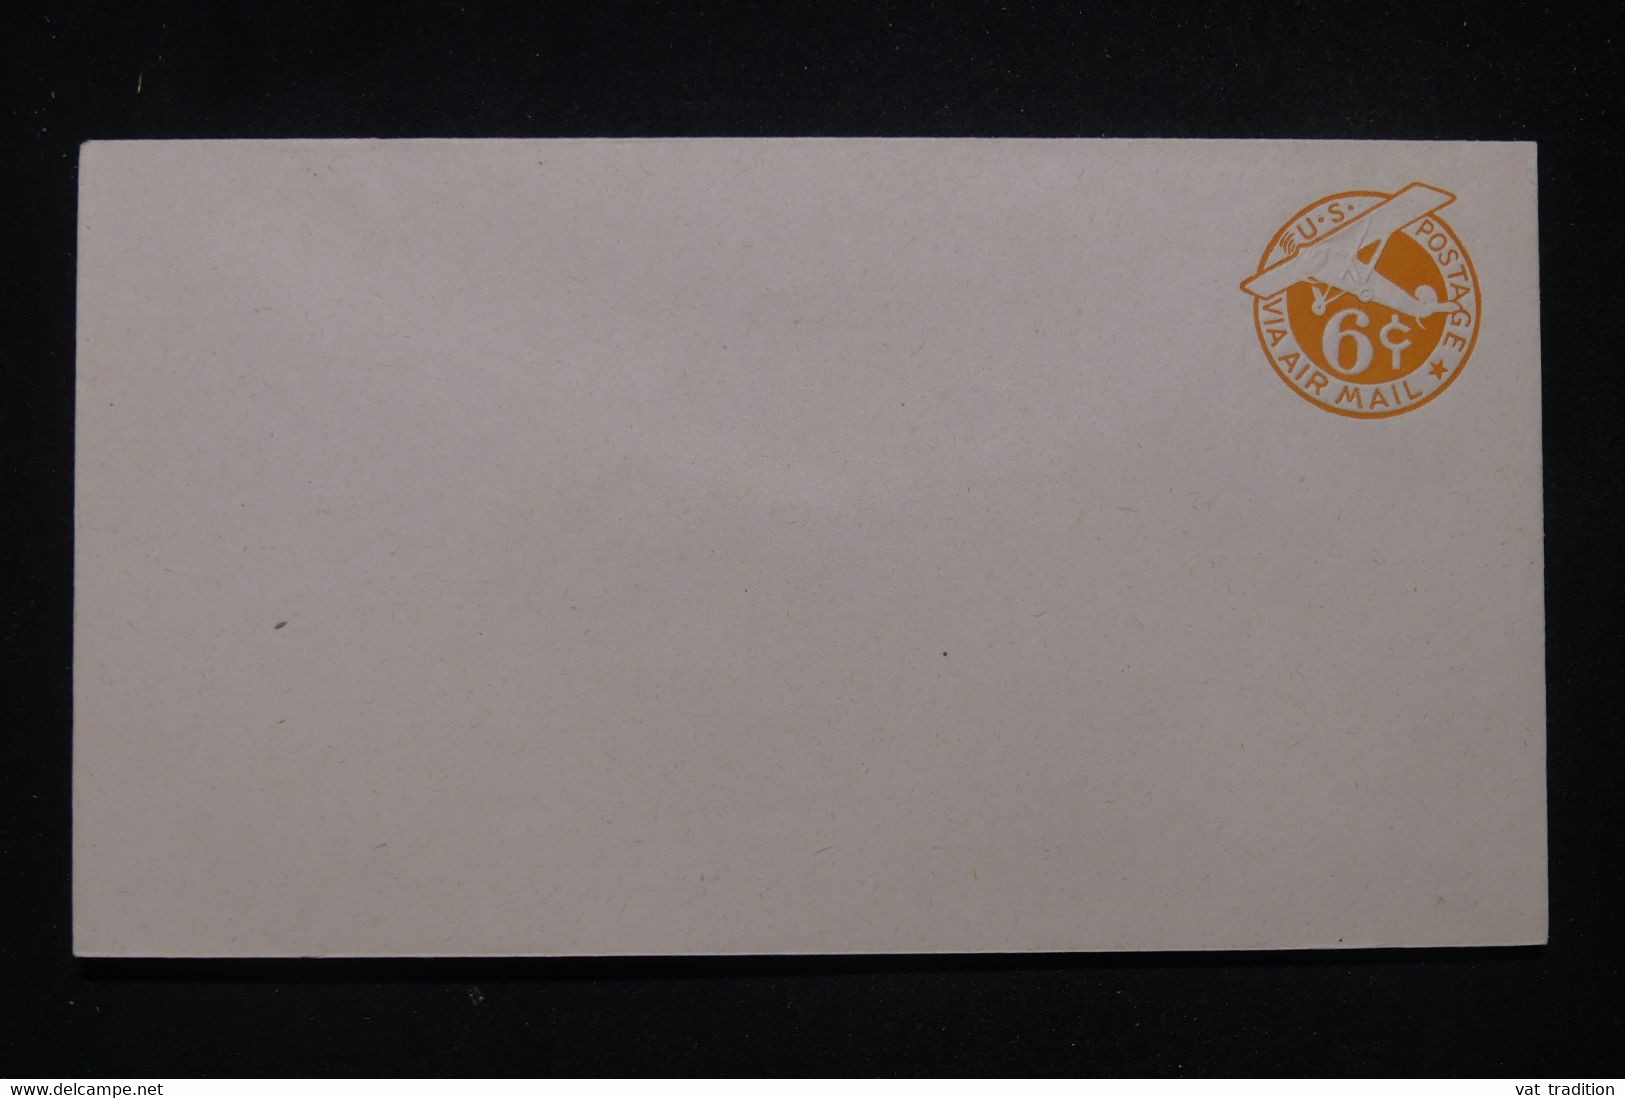 ETATS UNIS - Entier Postal Par Avion, Non Circulé - L 99307 - 1921-40